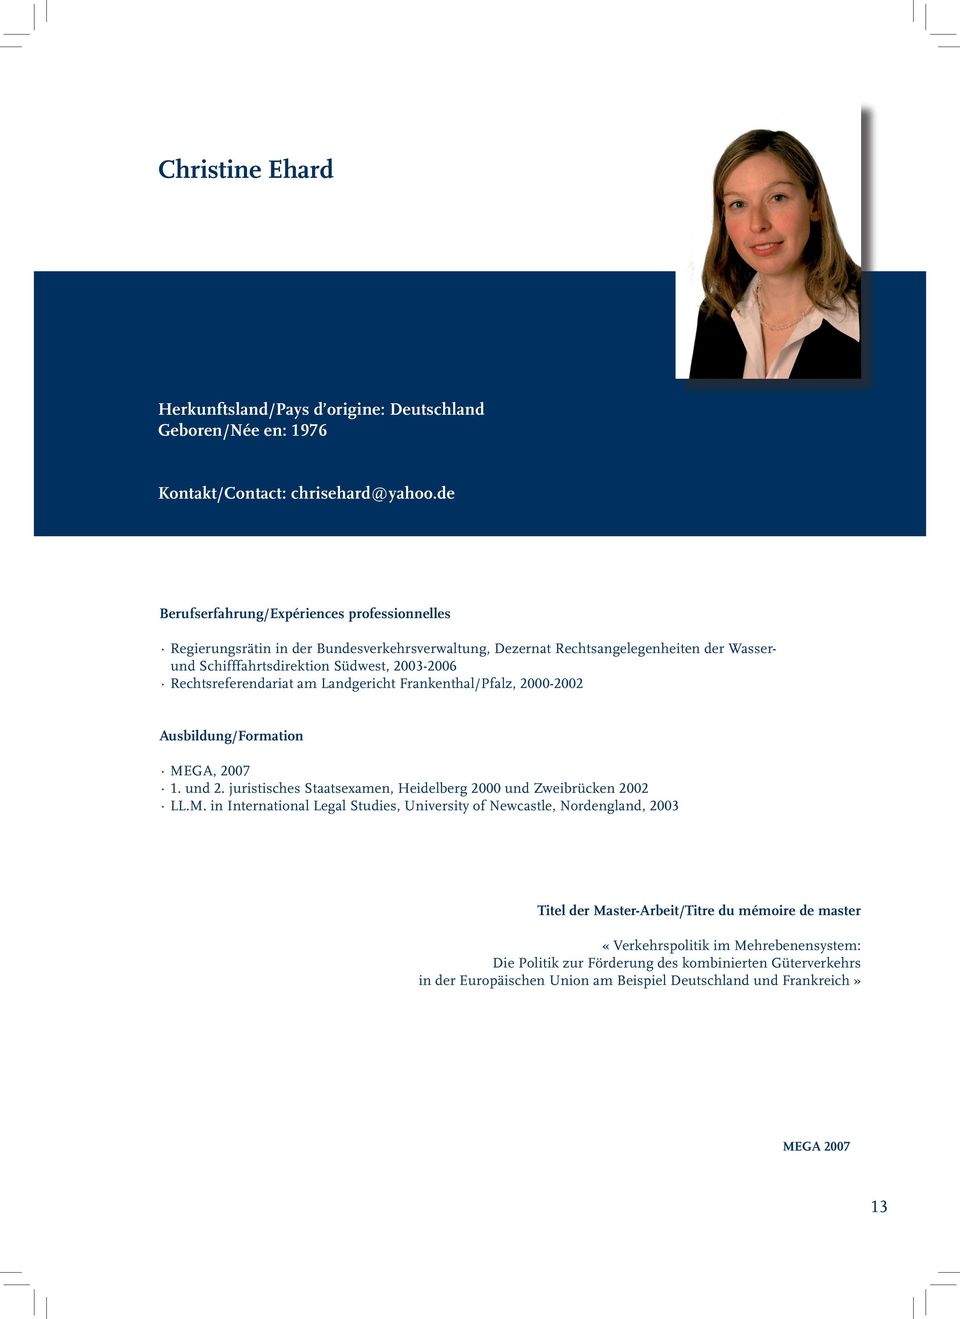 Rechtsreferendariat am Landgericht Frankenthal/Pfalz, 2000-2002 Ausbildung/Formation 1. und 2. juristisches Staatsexamen, Heidelberg 2000 und Zweibrücken 2002 LL.M.